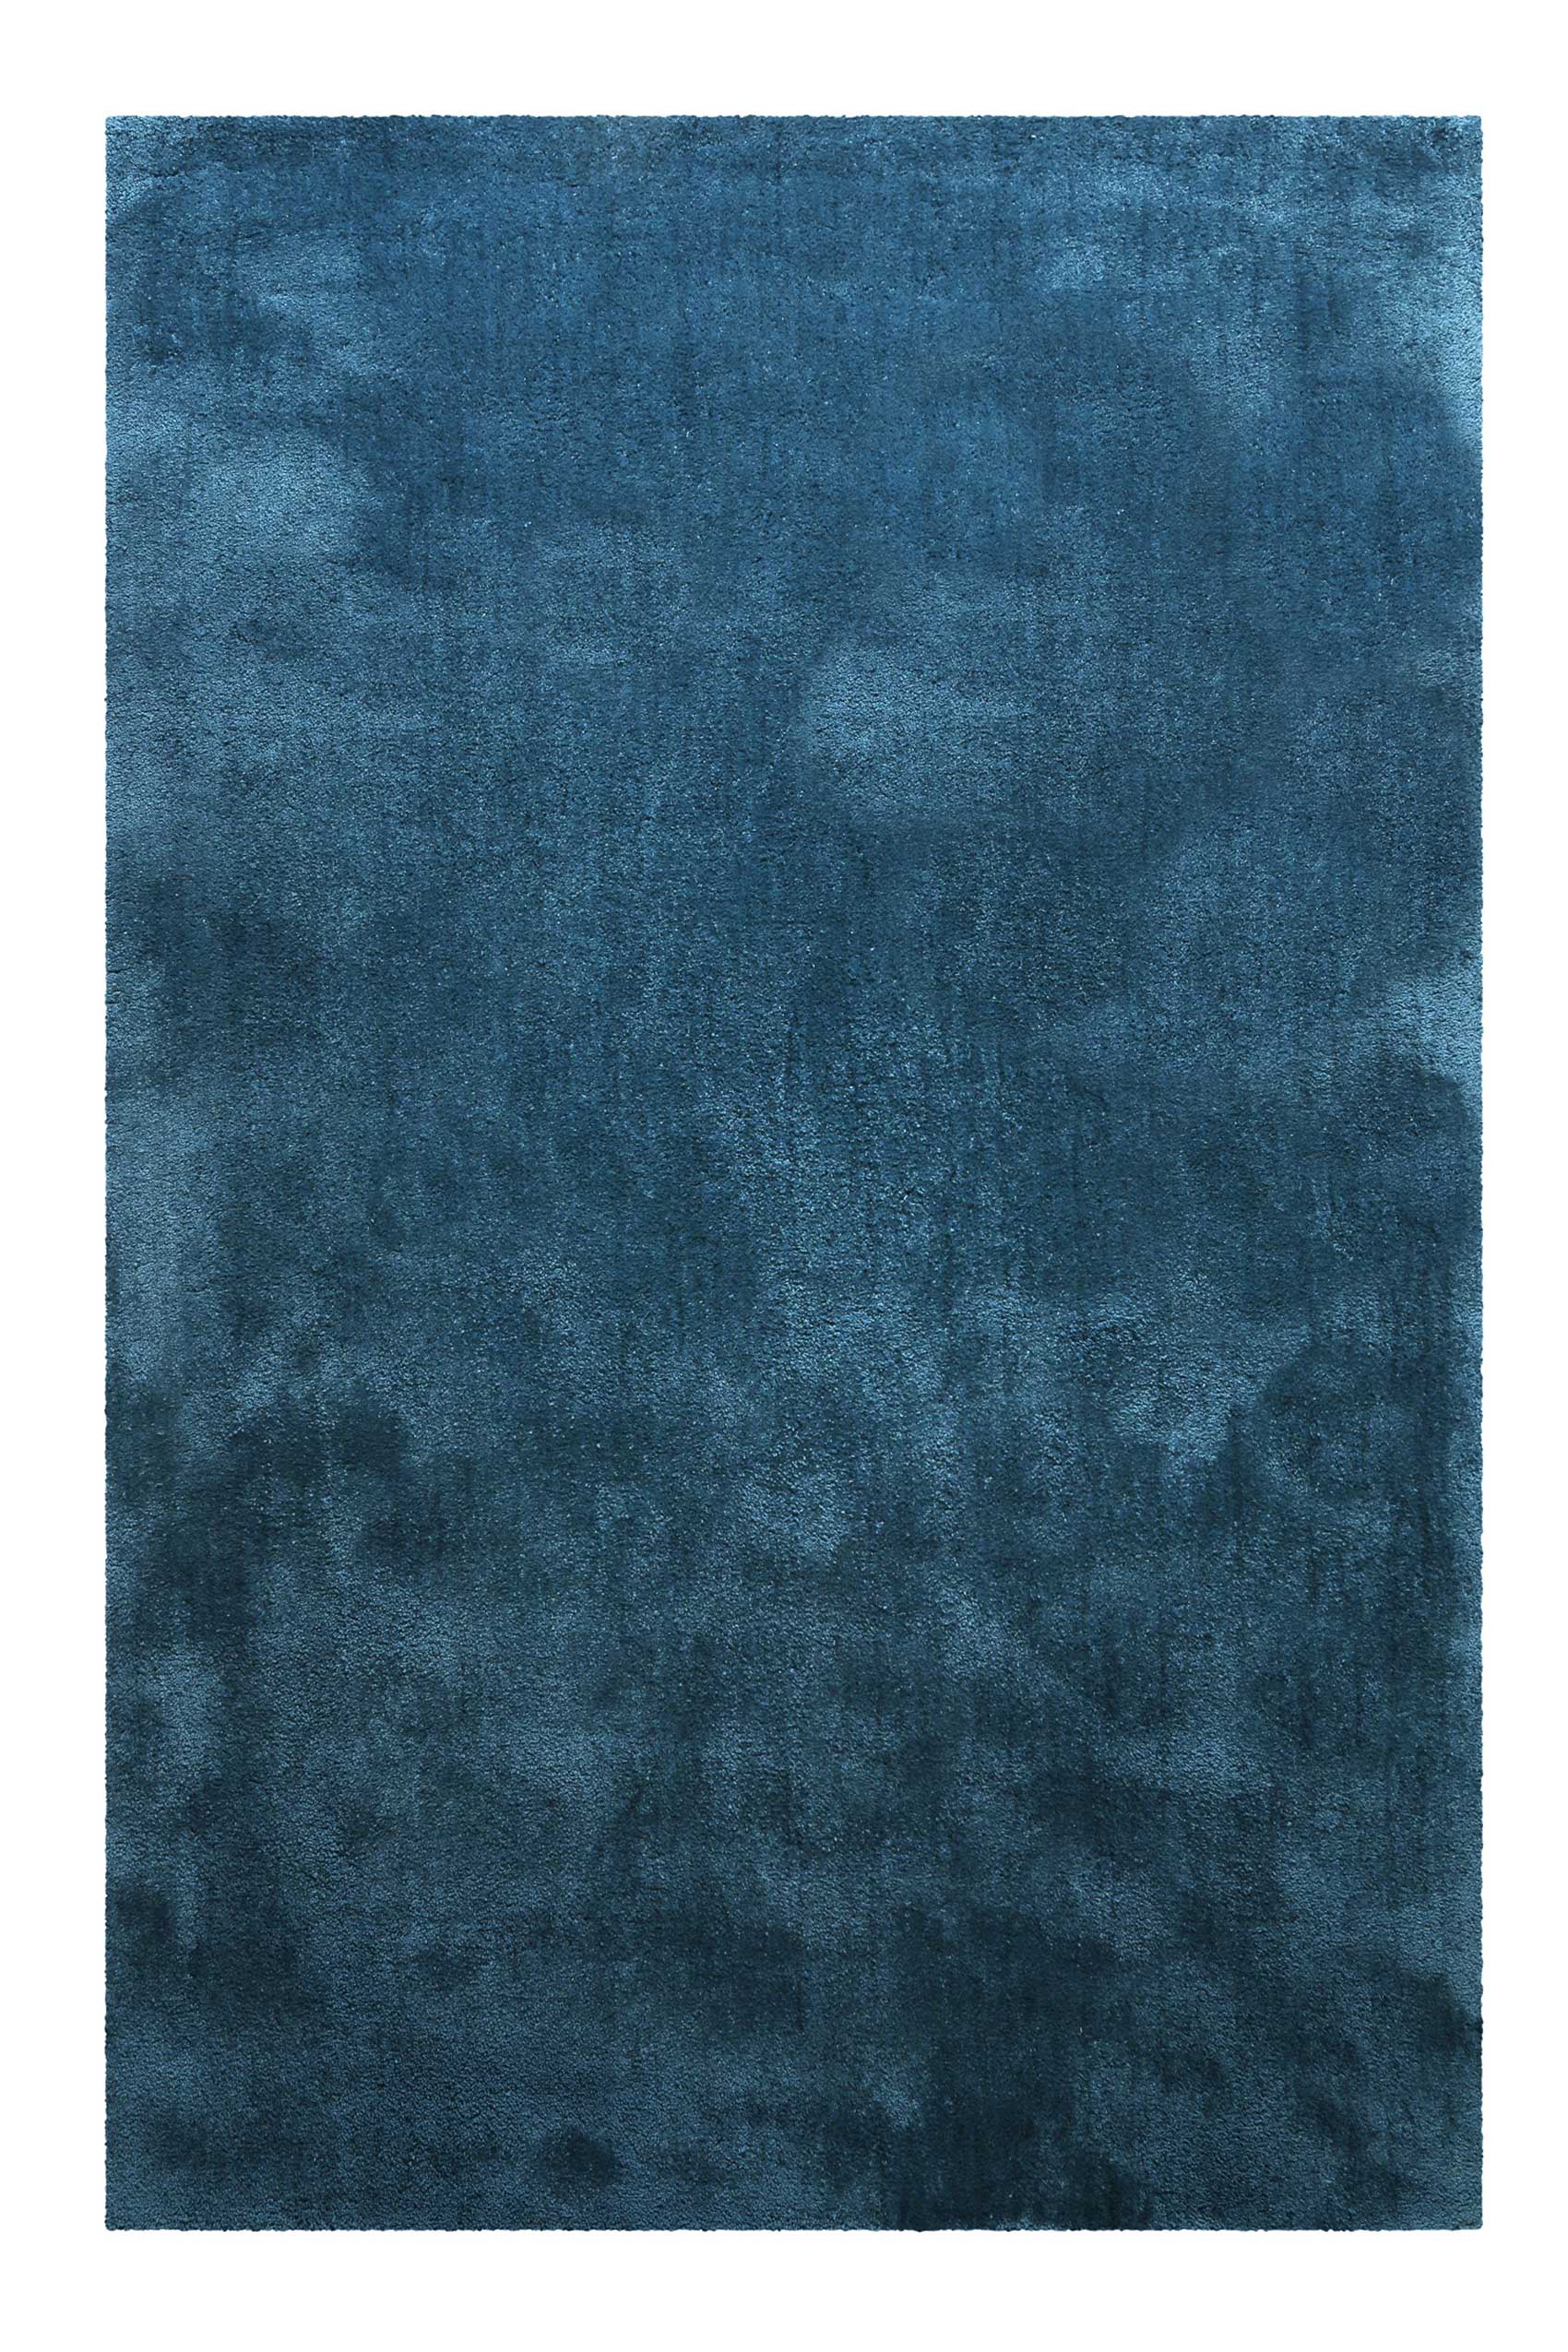 Tapis en microfibre dense bleu pétrole 120x170 cm